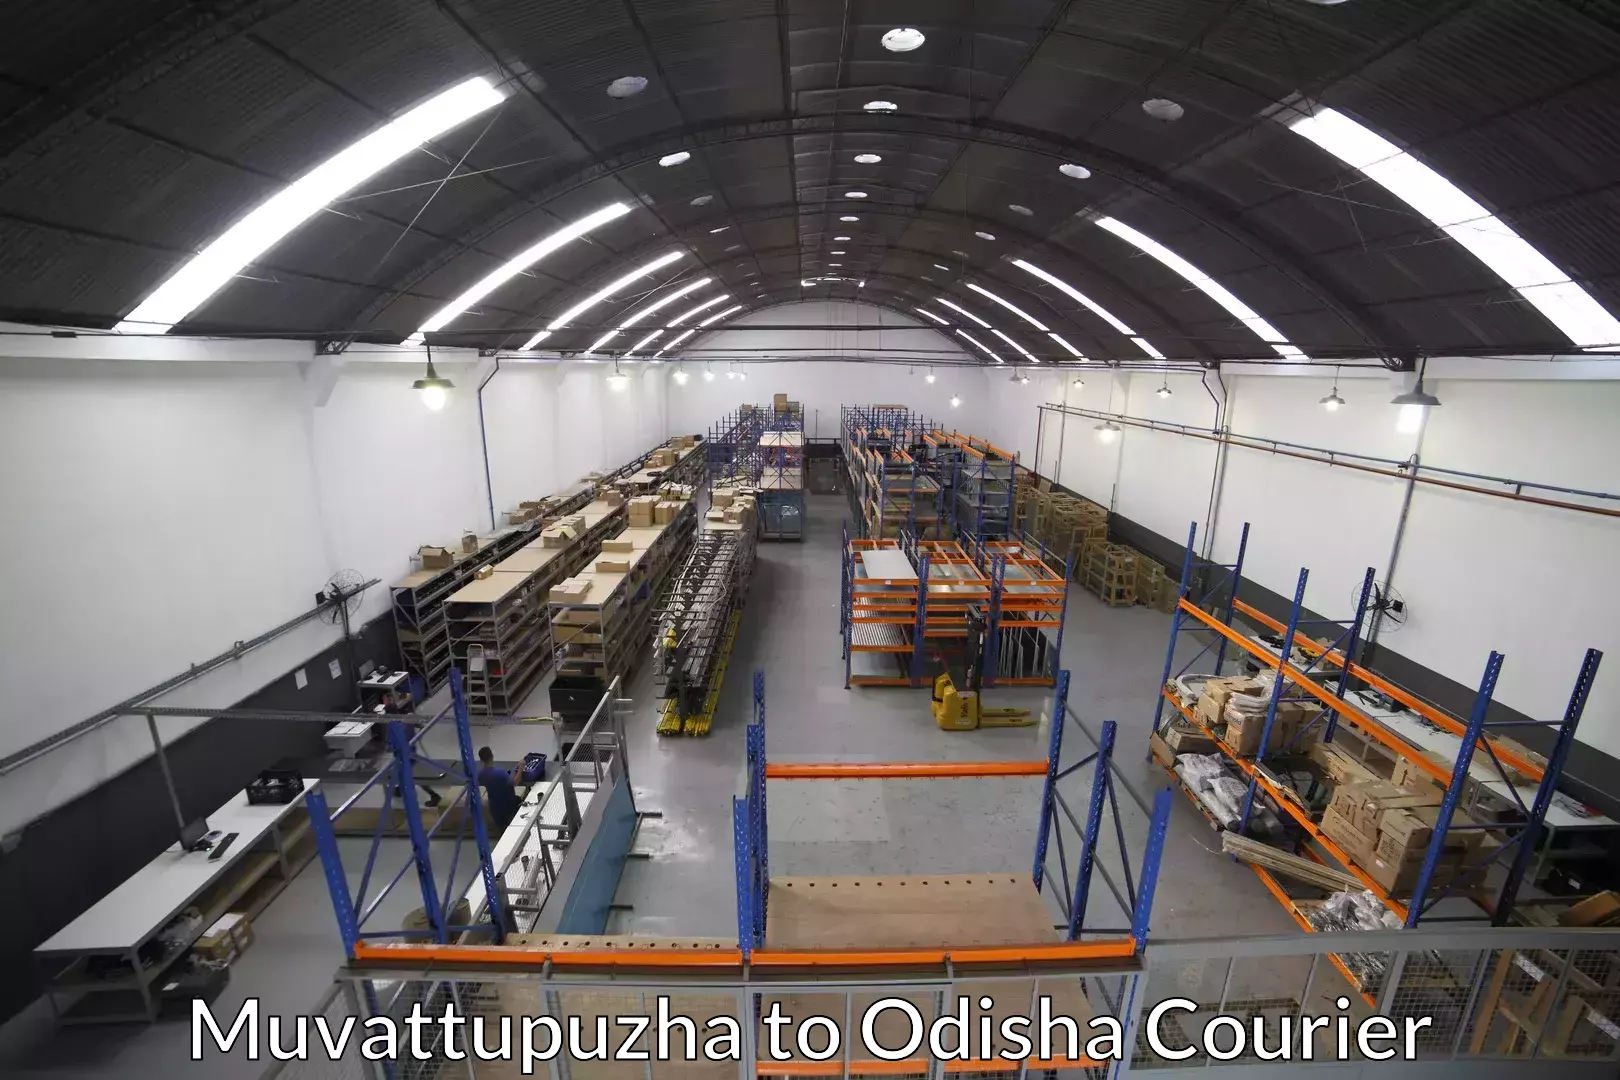 Furniture moving experts Muvattupuzha to Asika